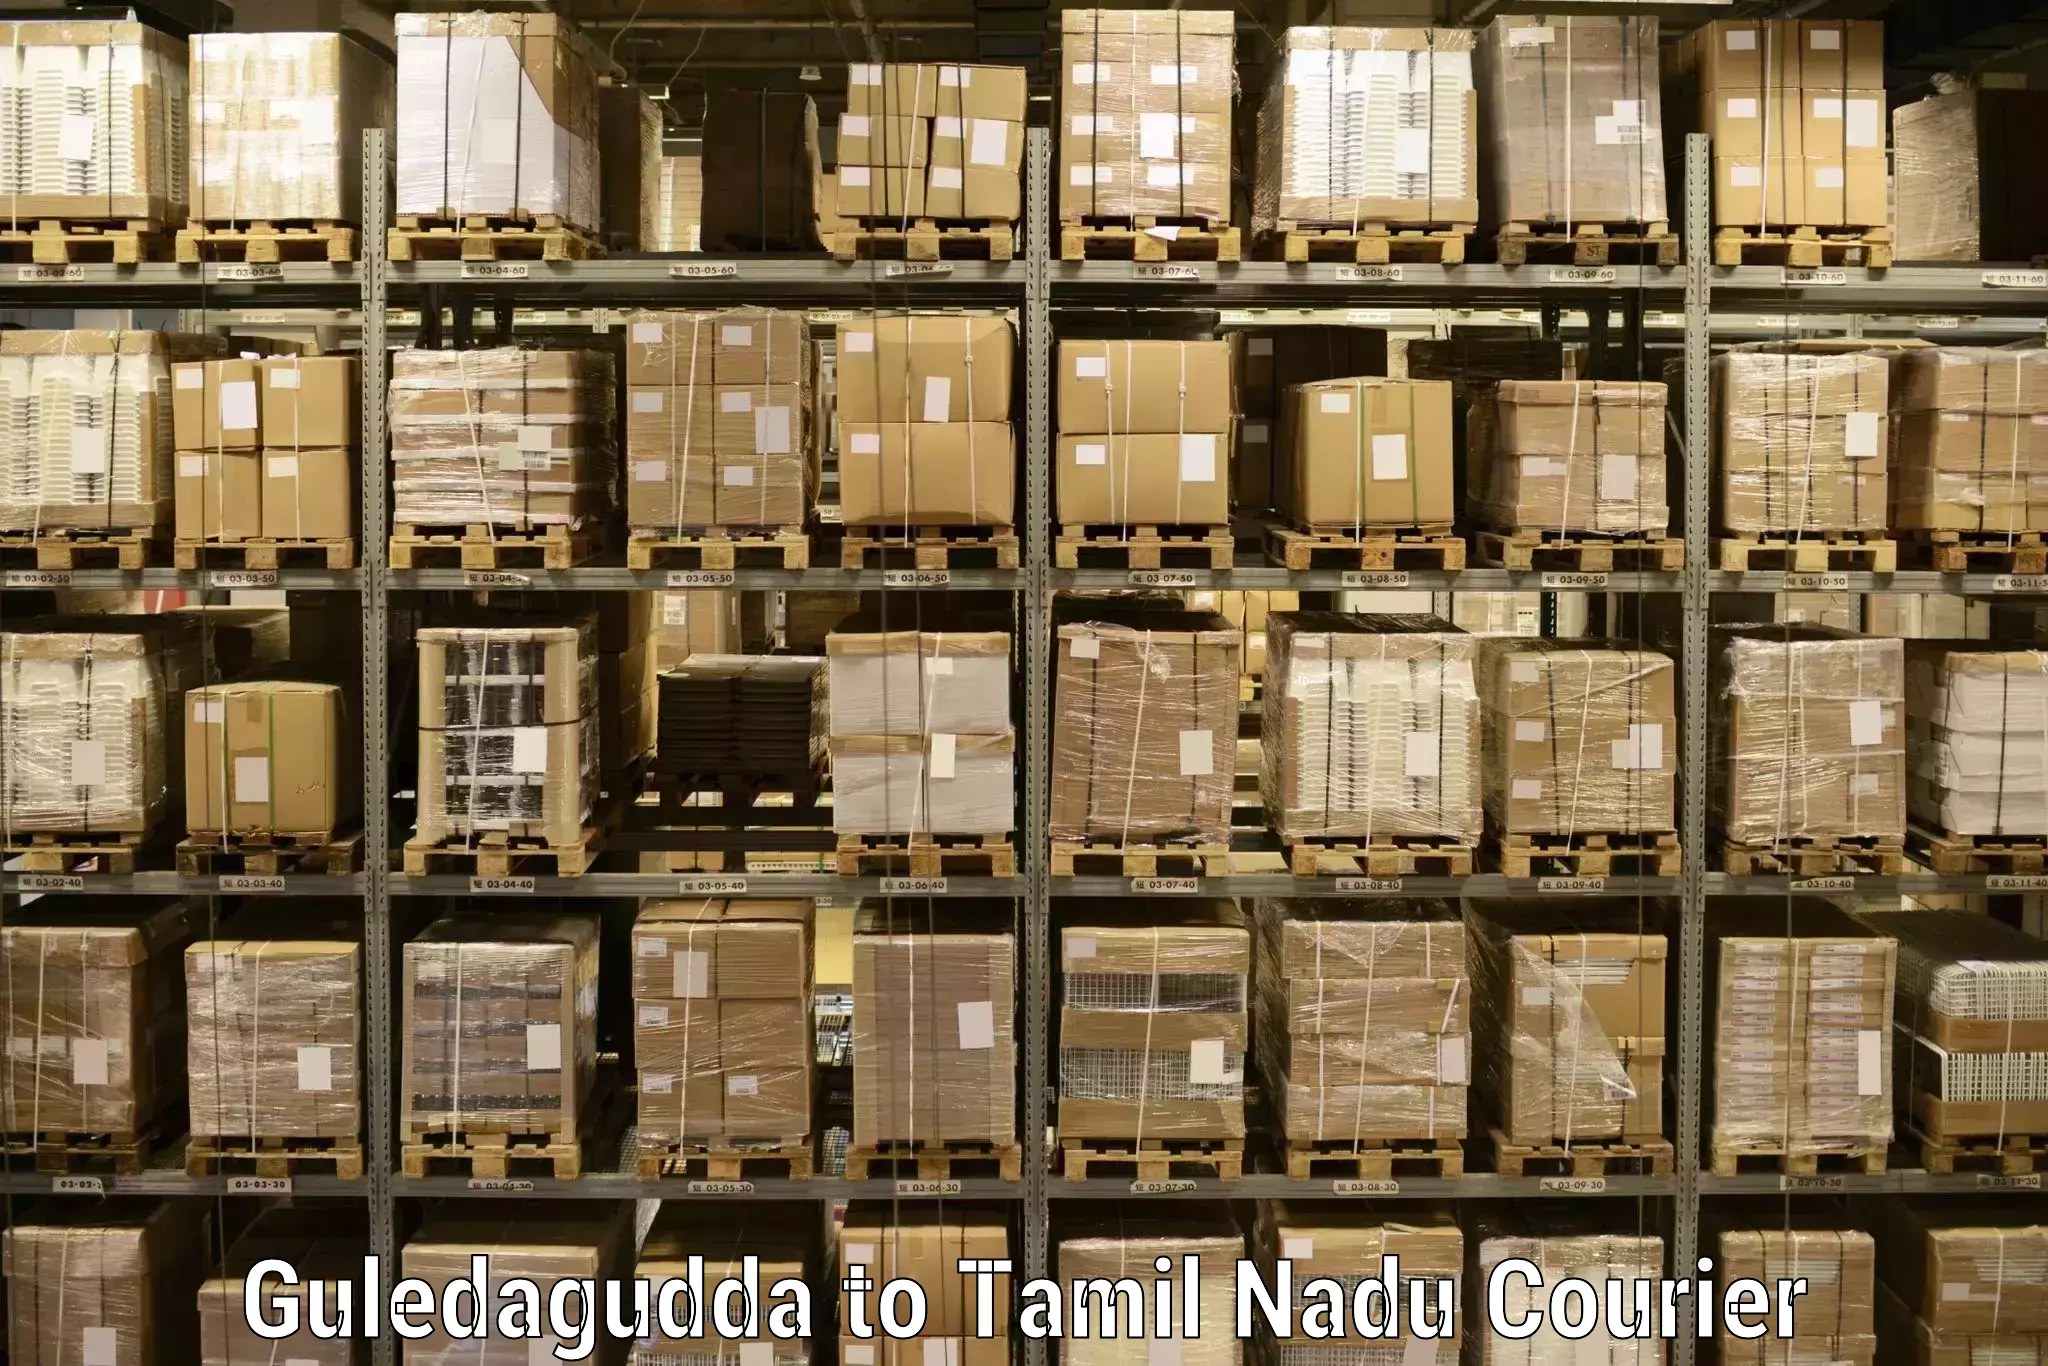 Large package courier Guledagudda to Vickramasingapuram